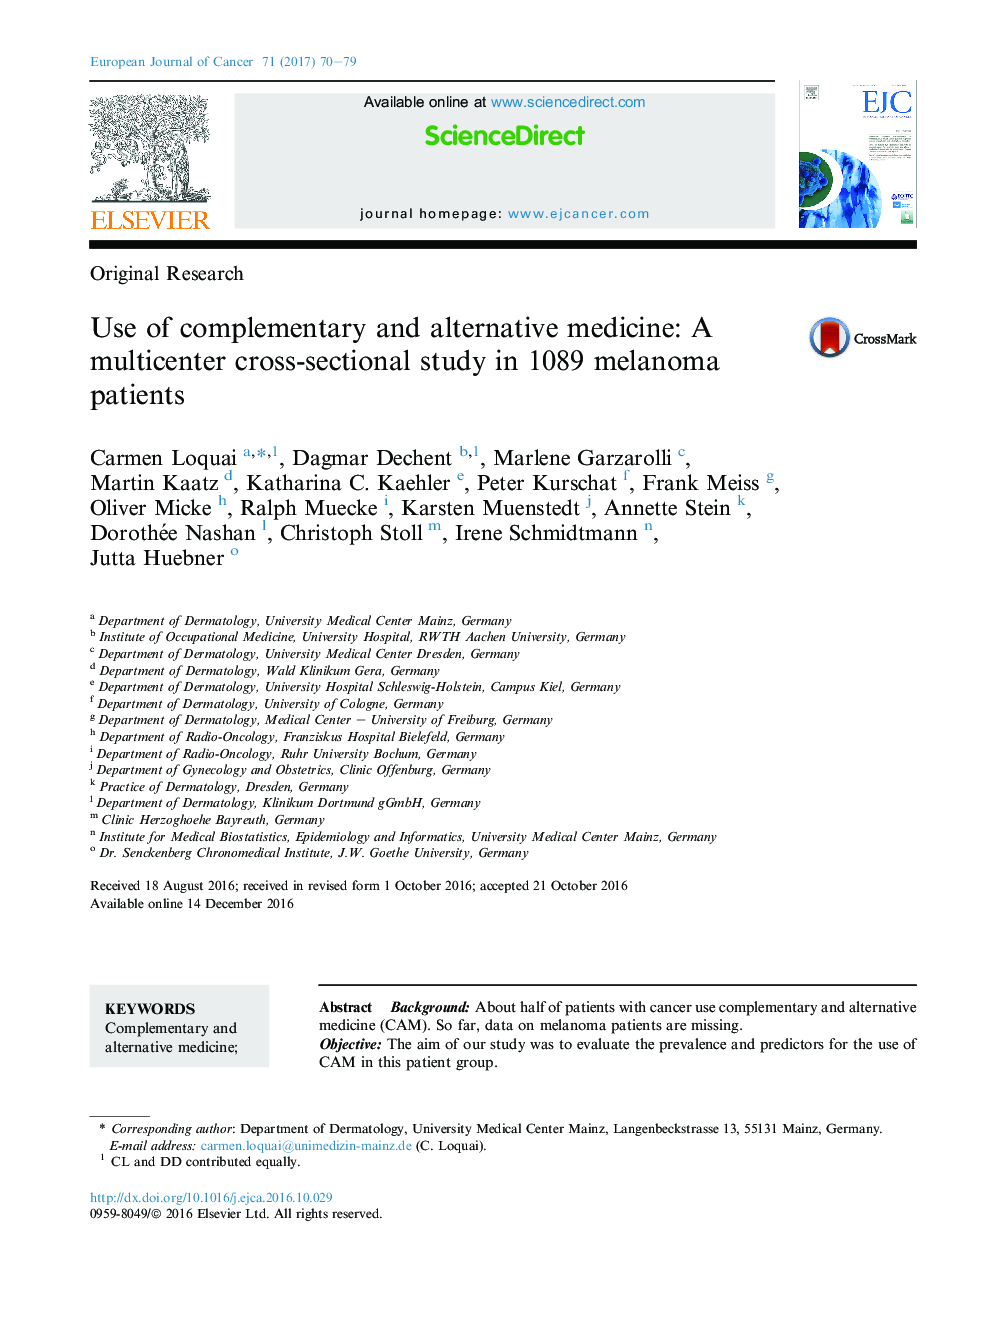 تحقیقات اصلی استفاده از طب مکمل و جایگزین: یک مطالعه مقطعی چند کانونی در 1089 بیمار مبتلا به ملانوم 